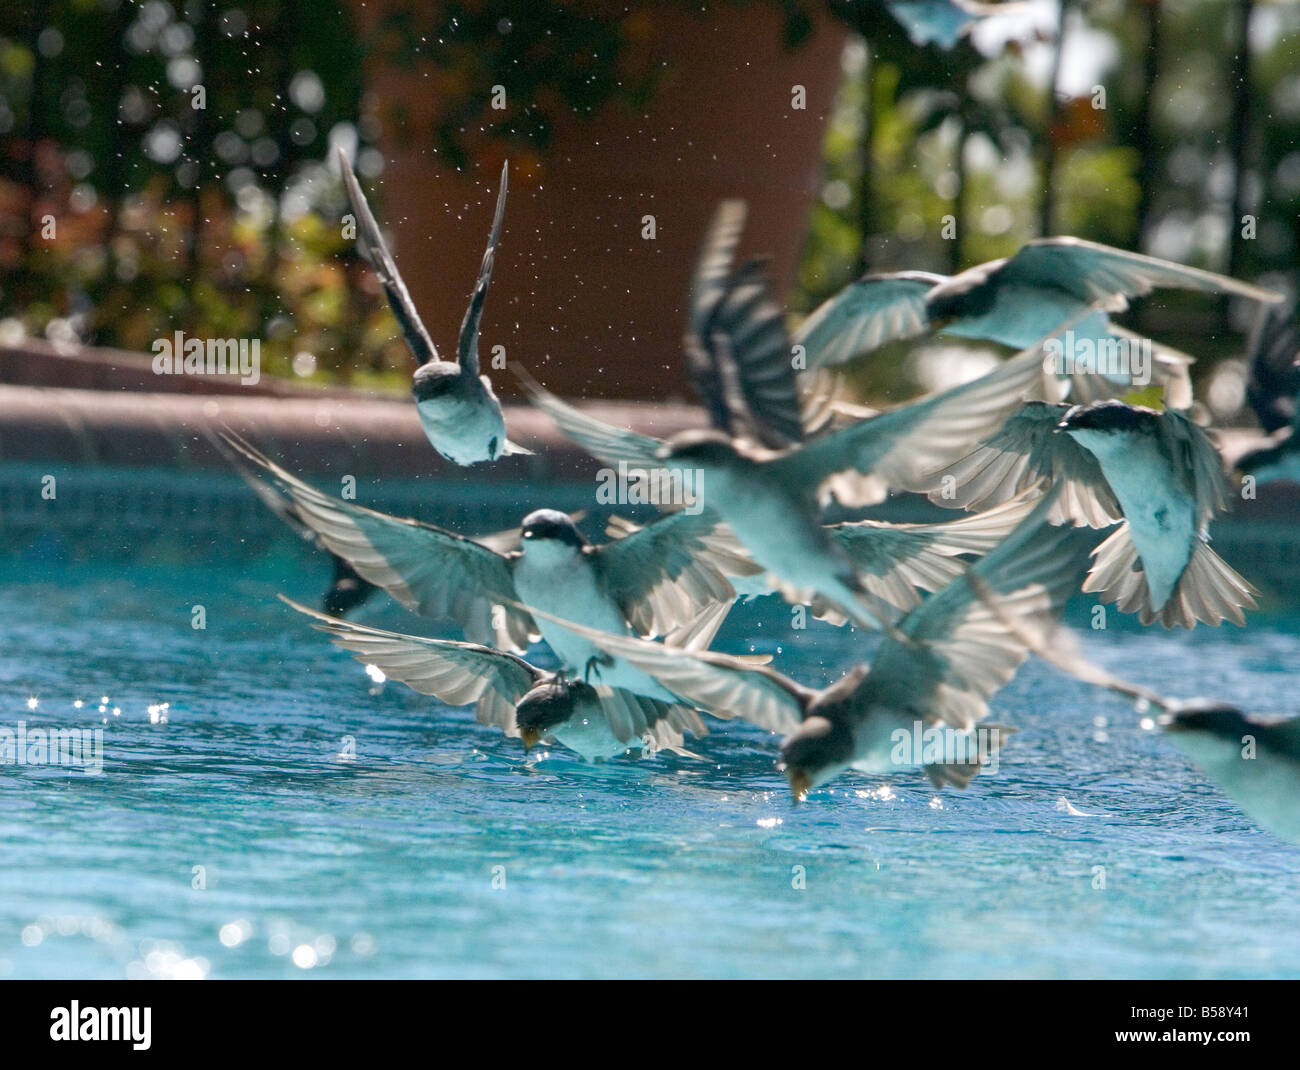 La migración de una bandada de golondrinas acorss roza la superficie de una piscina y toma un trago de agua Foto de stock